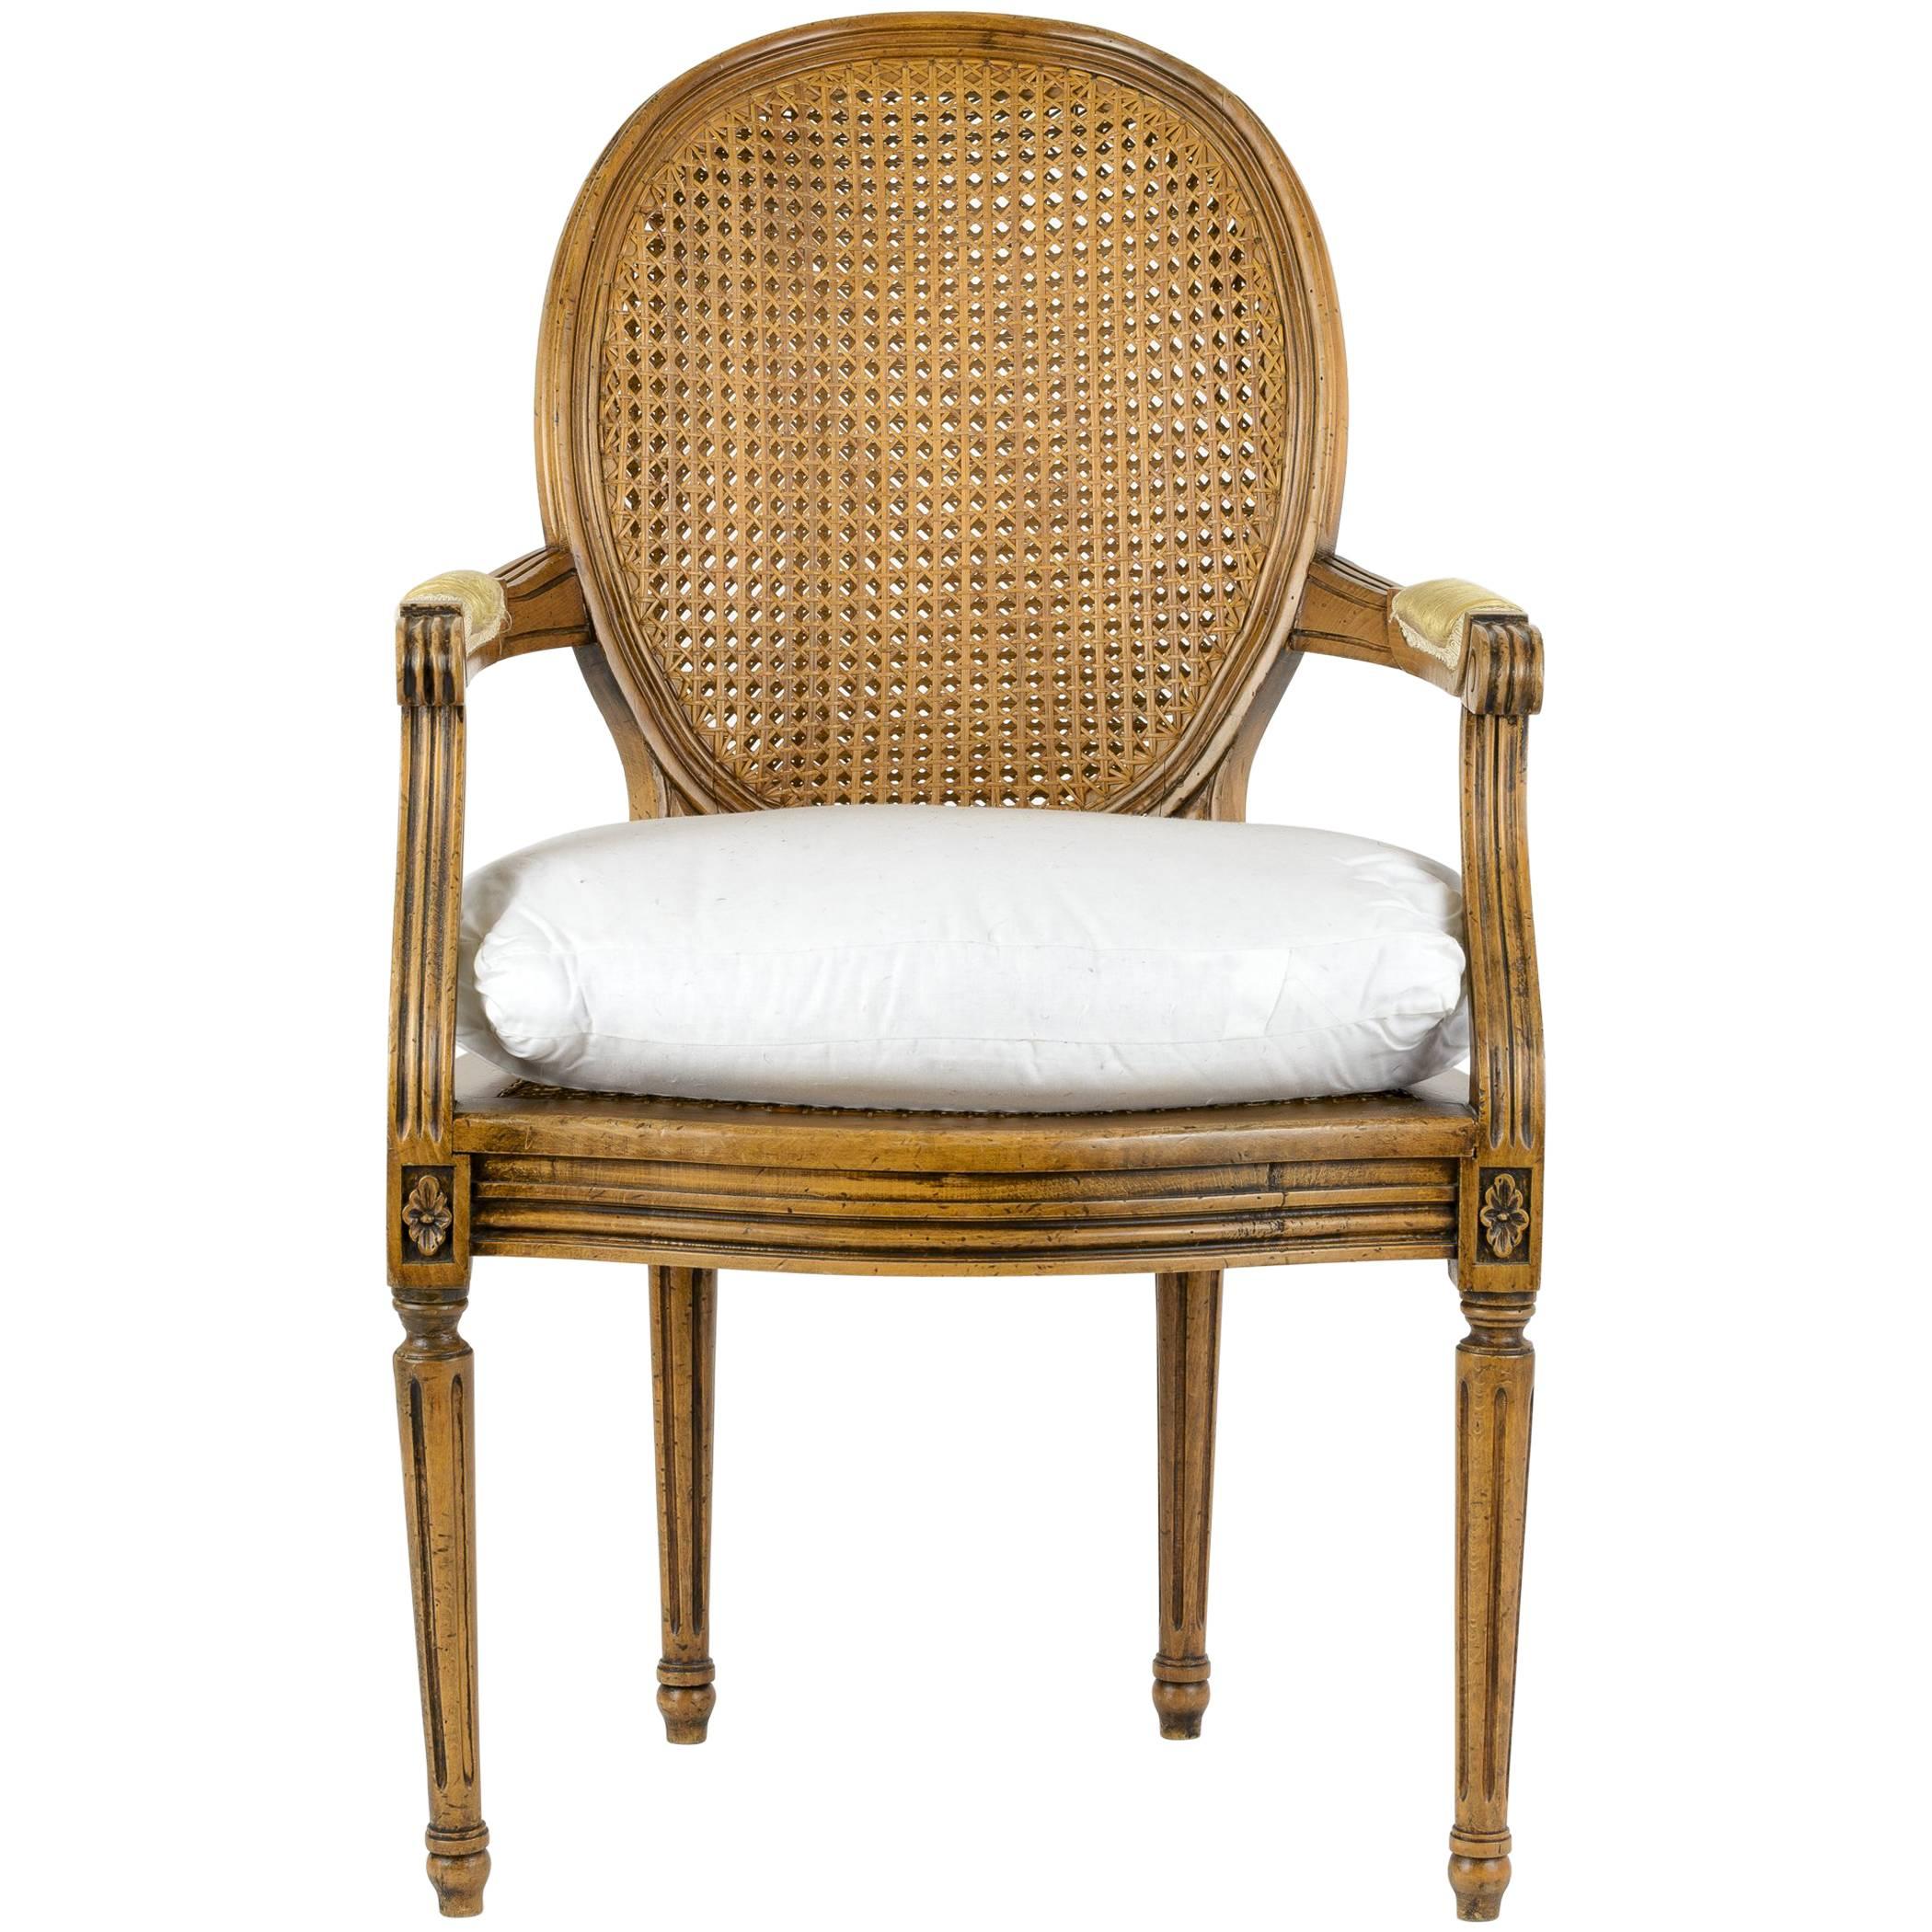 Sessel im Stil Louis XVI. mit Rohrrückenlehne und Sitz